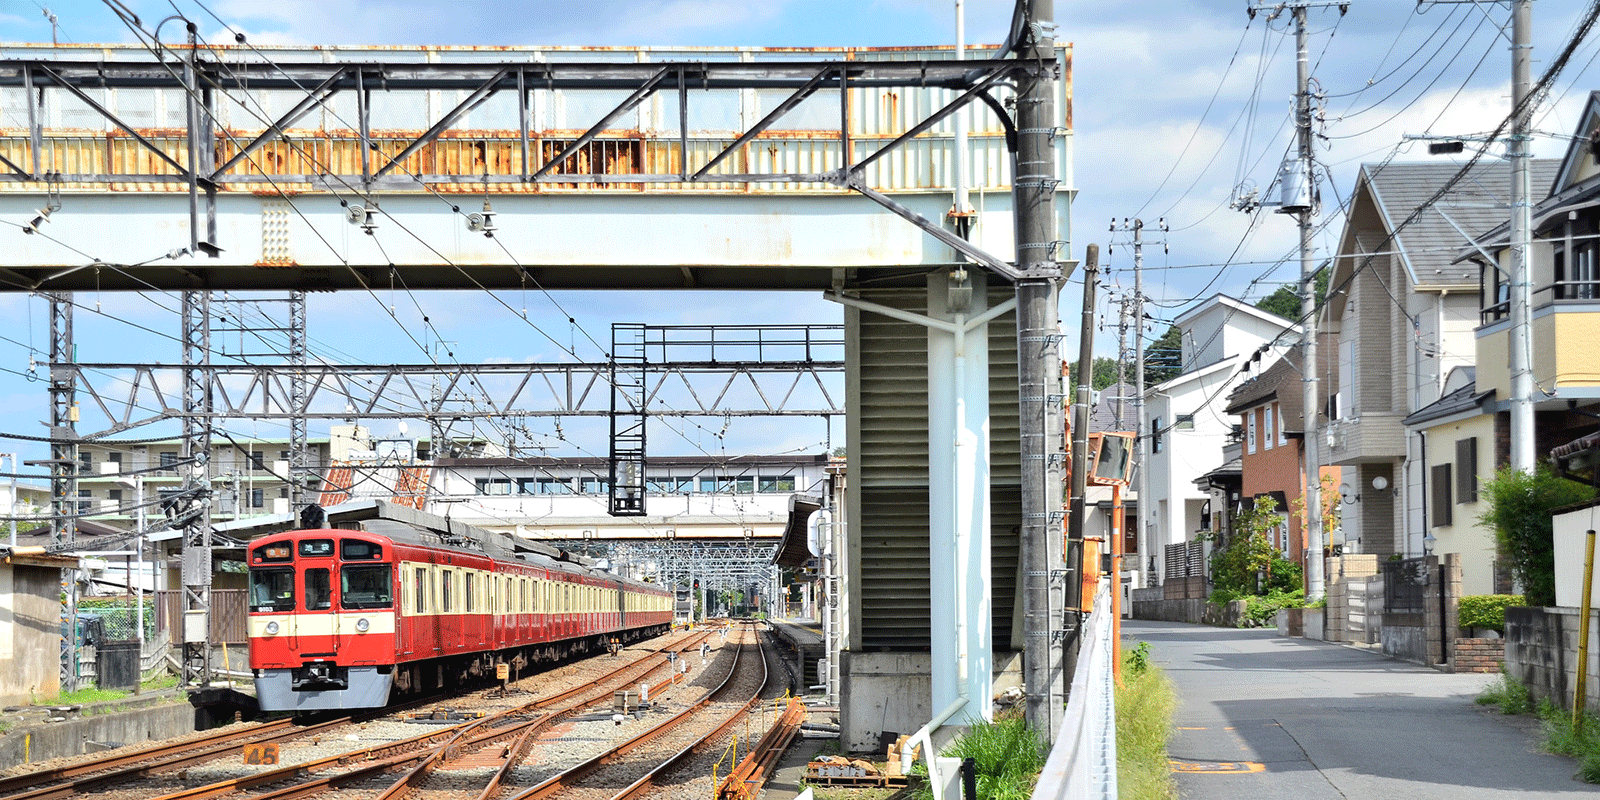 仏子駅